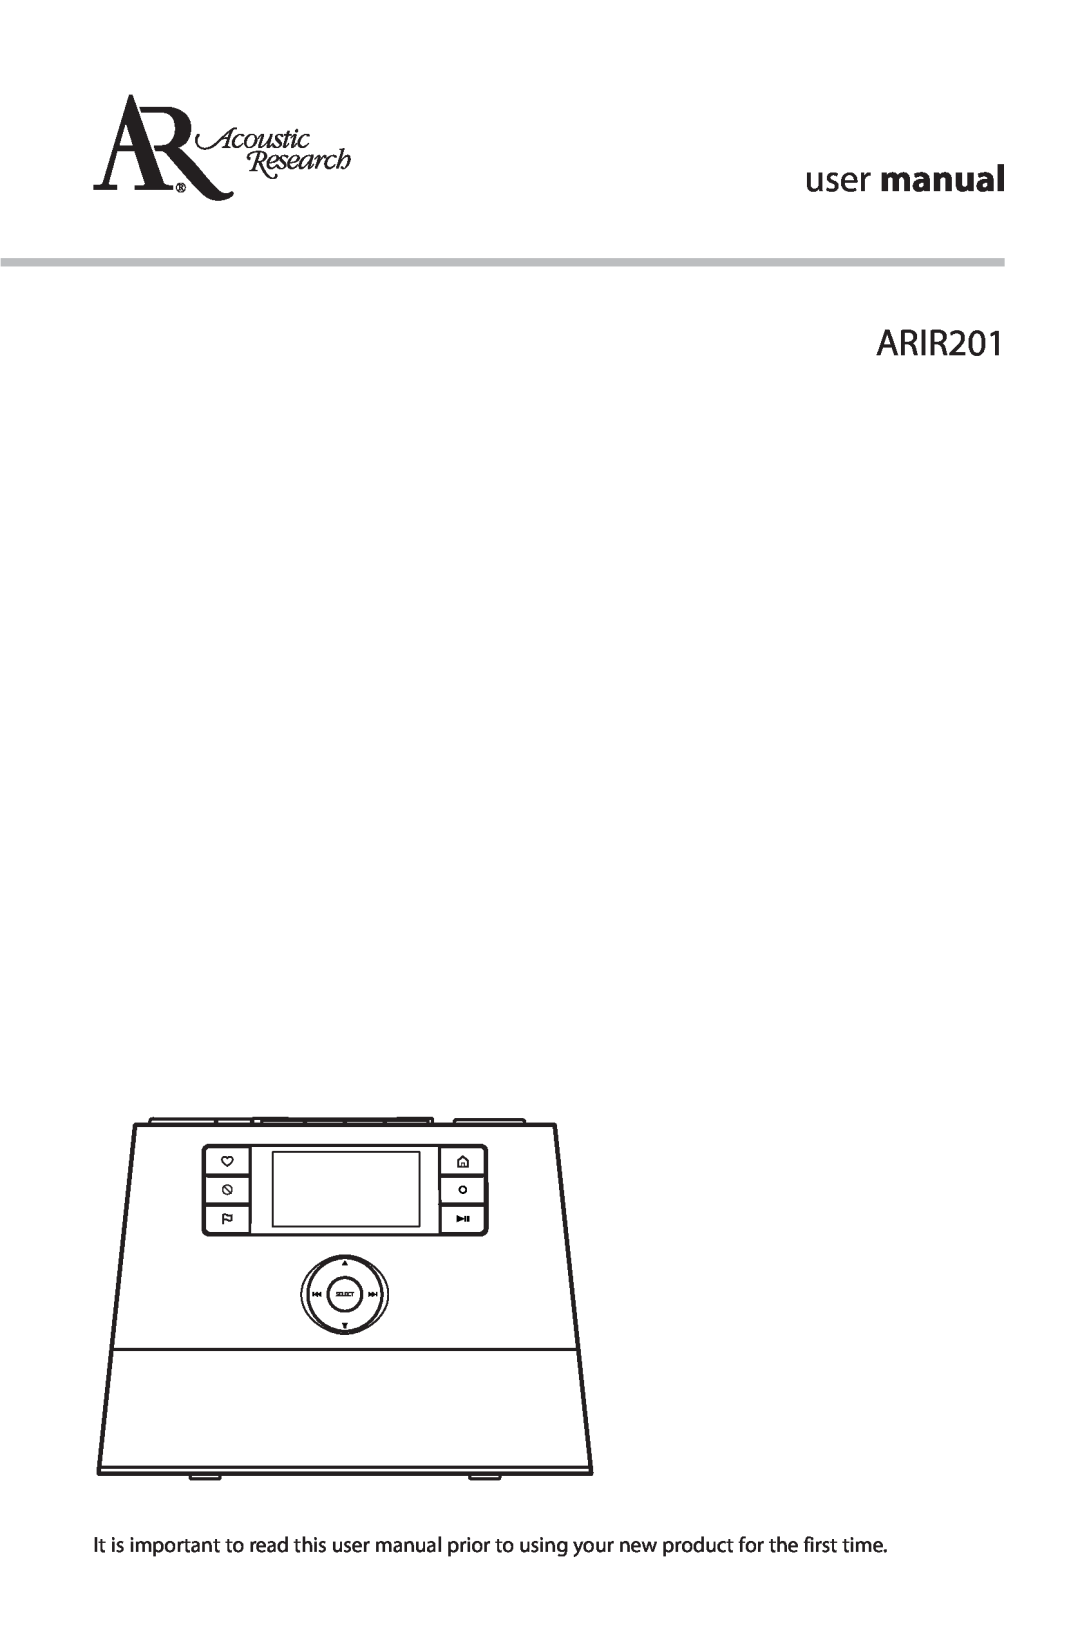 Acoustic Research ARIR201 user manual 